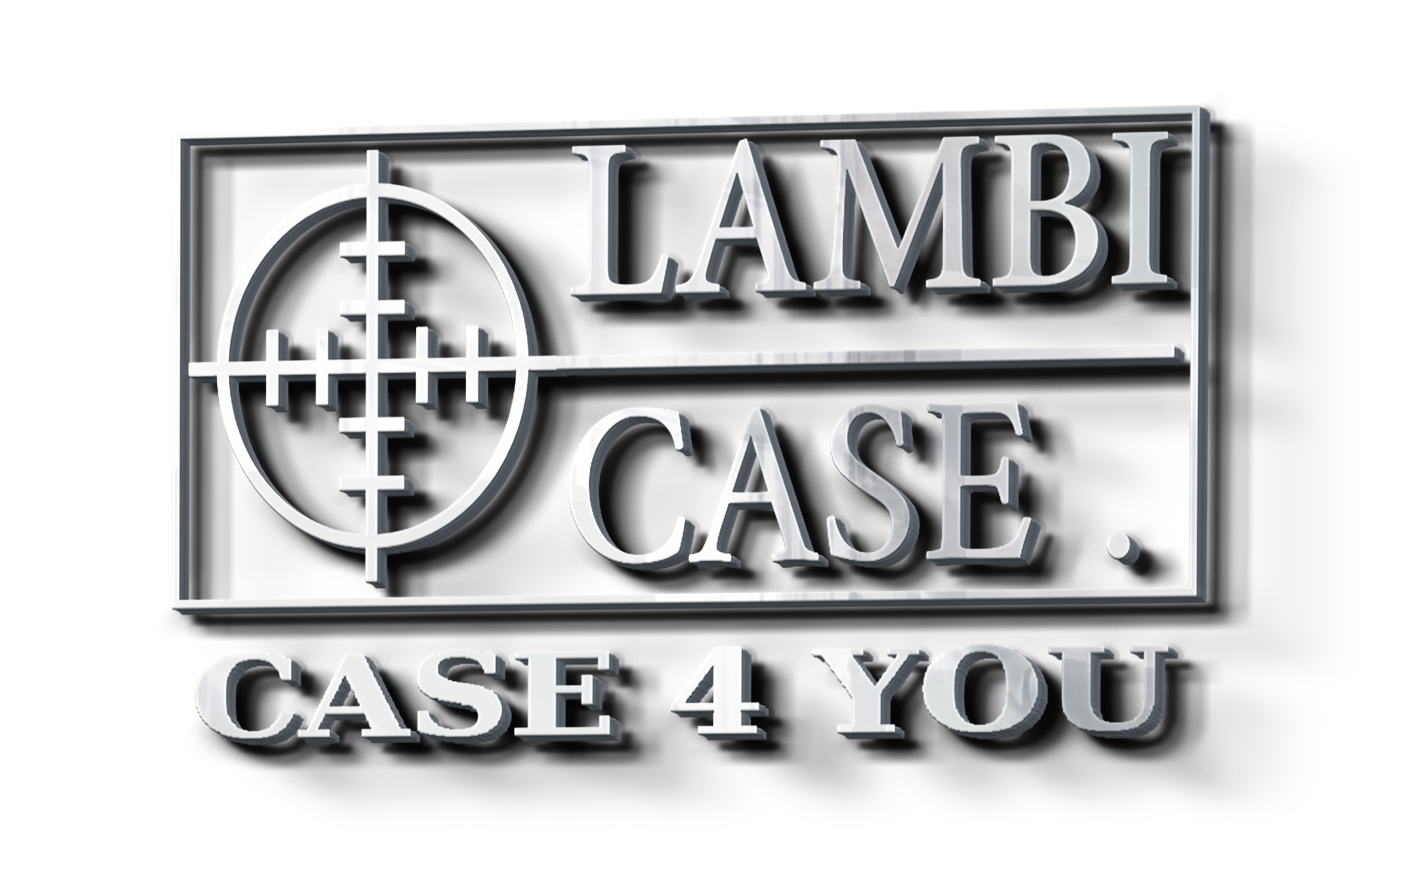 LAMBI CASE – Szyjemy torby i pokrowce pod wymiar na sprzęt muzyczny, oświetleniowy, na karabinki i inny sprzęt militarny